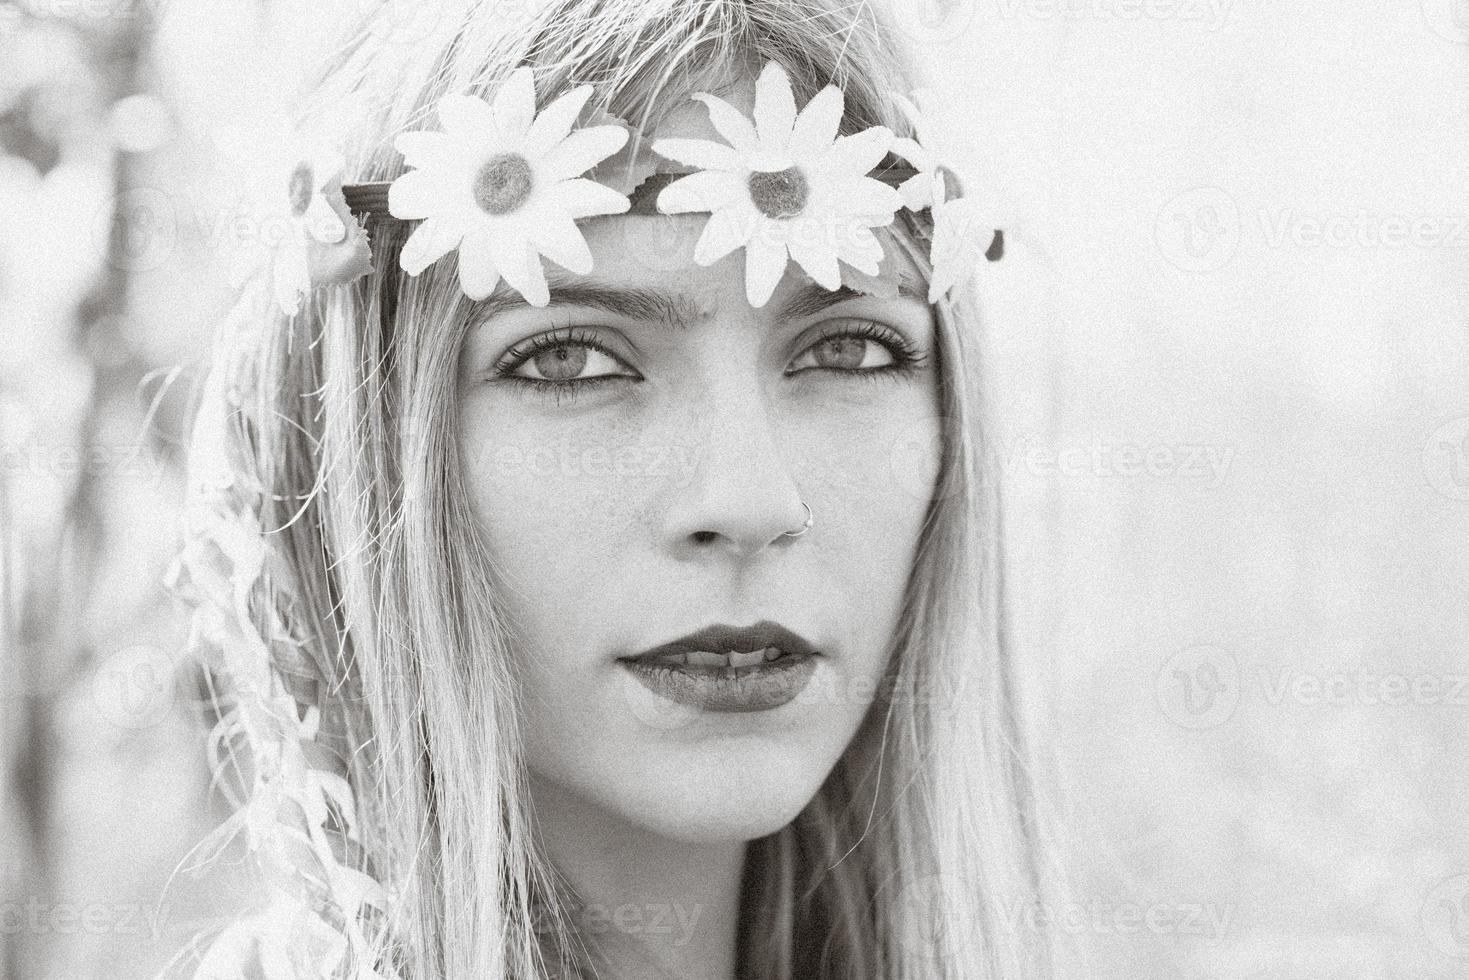 hippie meisje - 1970 stijl foto